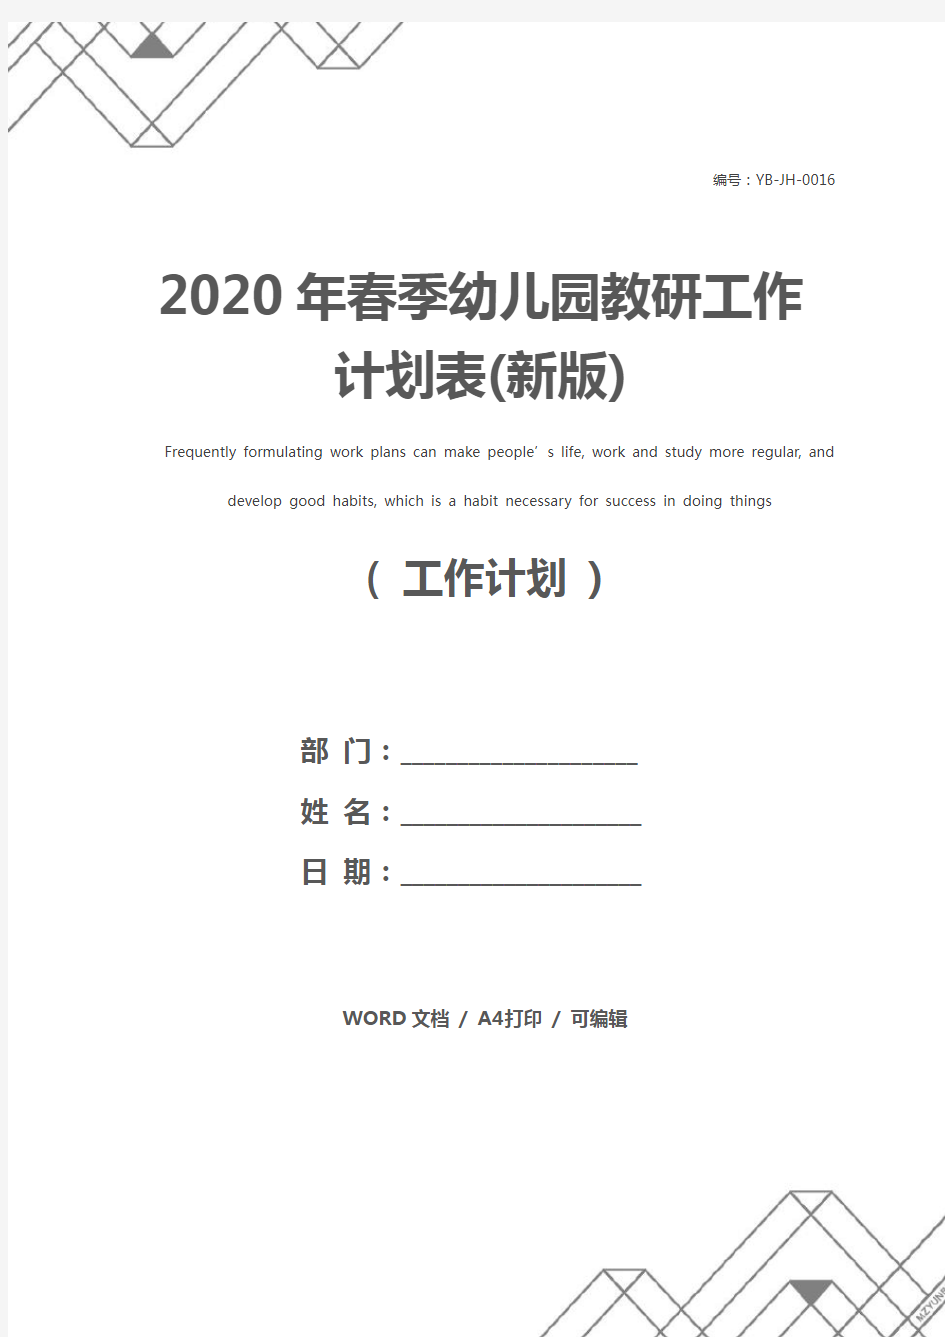 2020年春季幼儿园教研工作计划表(新版)